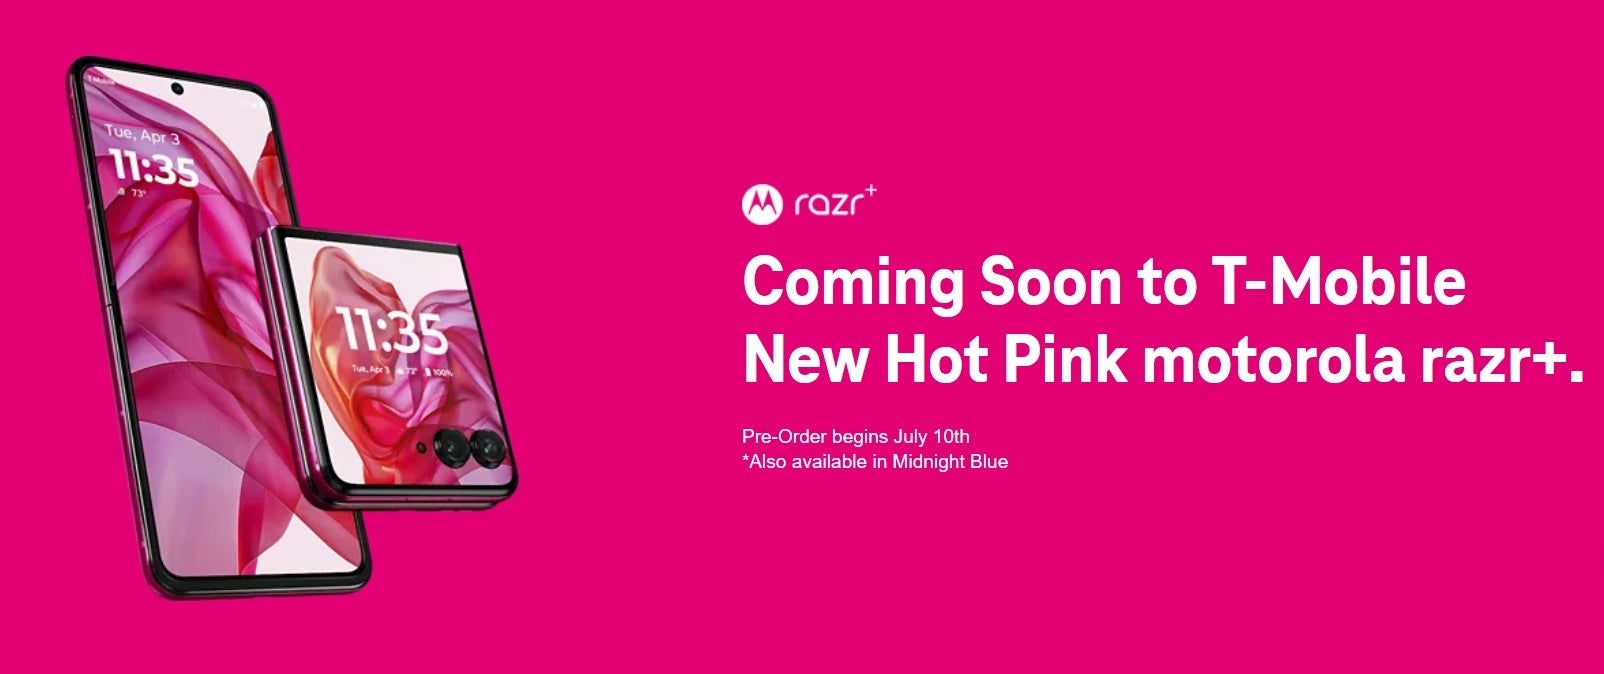 Yeni Razr+'ı Hot Pick'e özel olarak T-Mobile'dan edinin - Hot Pink Motorola Razr+ (2024), yalnızca T-Mobile'dan satışa sunulacak